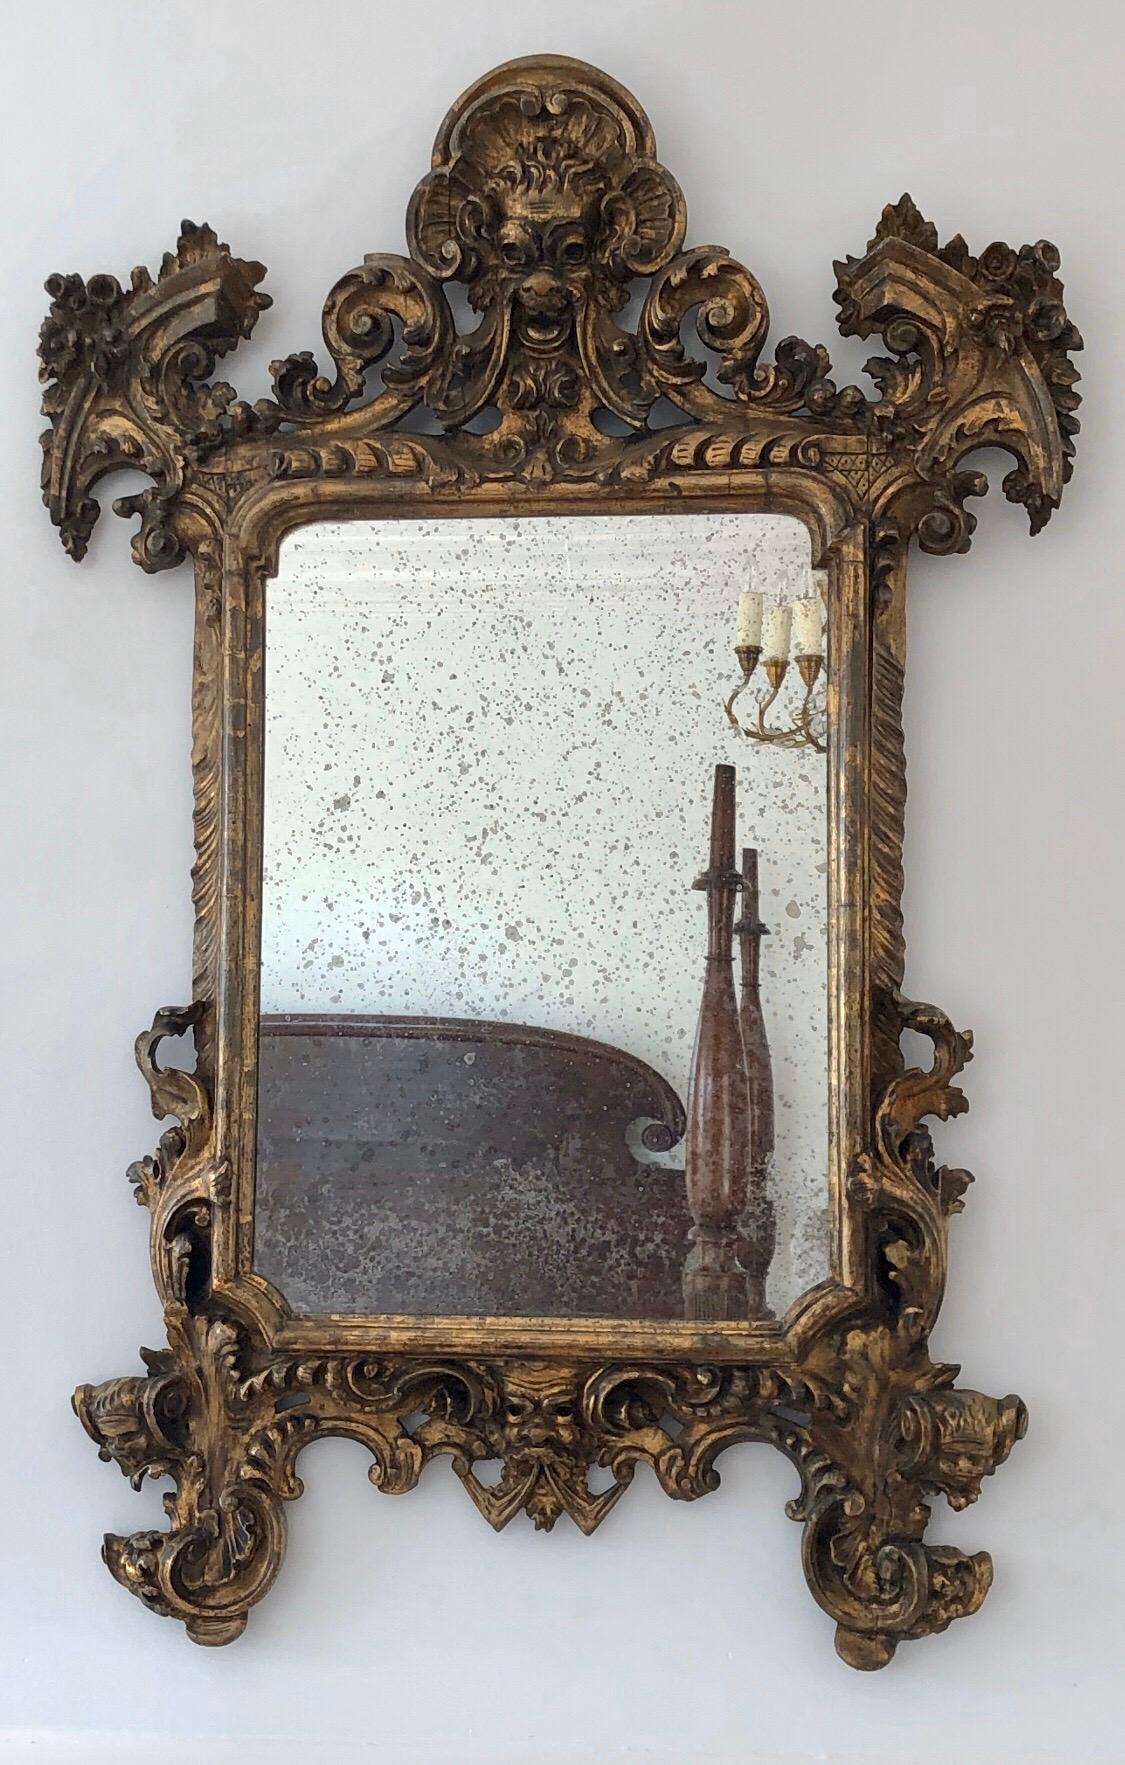 Dieser italienische Spiegel aus vergoldetem Barockholz aus dem 18. Jahrhundert hat ein theatralisches Gesicht an der Spitze mit Schwänzen, die zu den Füllhorn-Ecken fließen. Der kühne Rahmen ist mit klassisch geschnitzten Schnörkeln versehen. Die